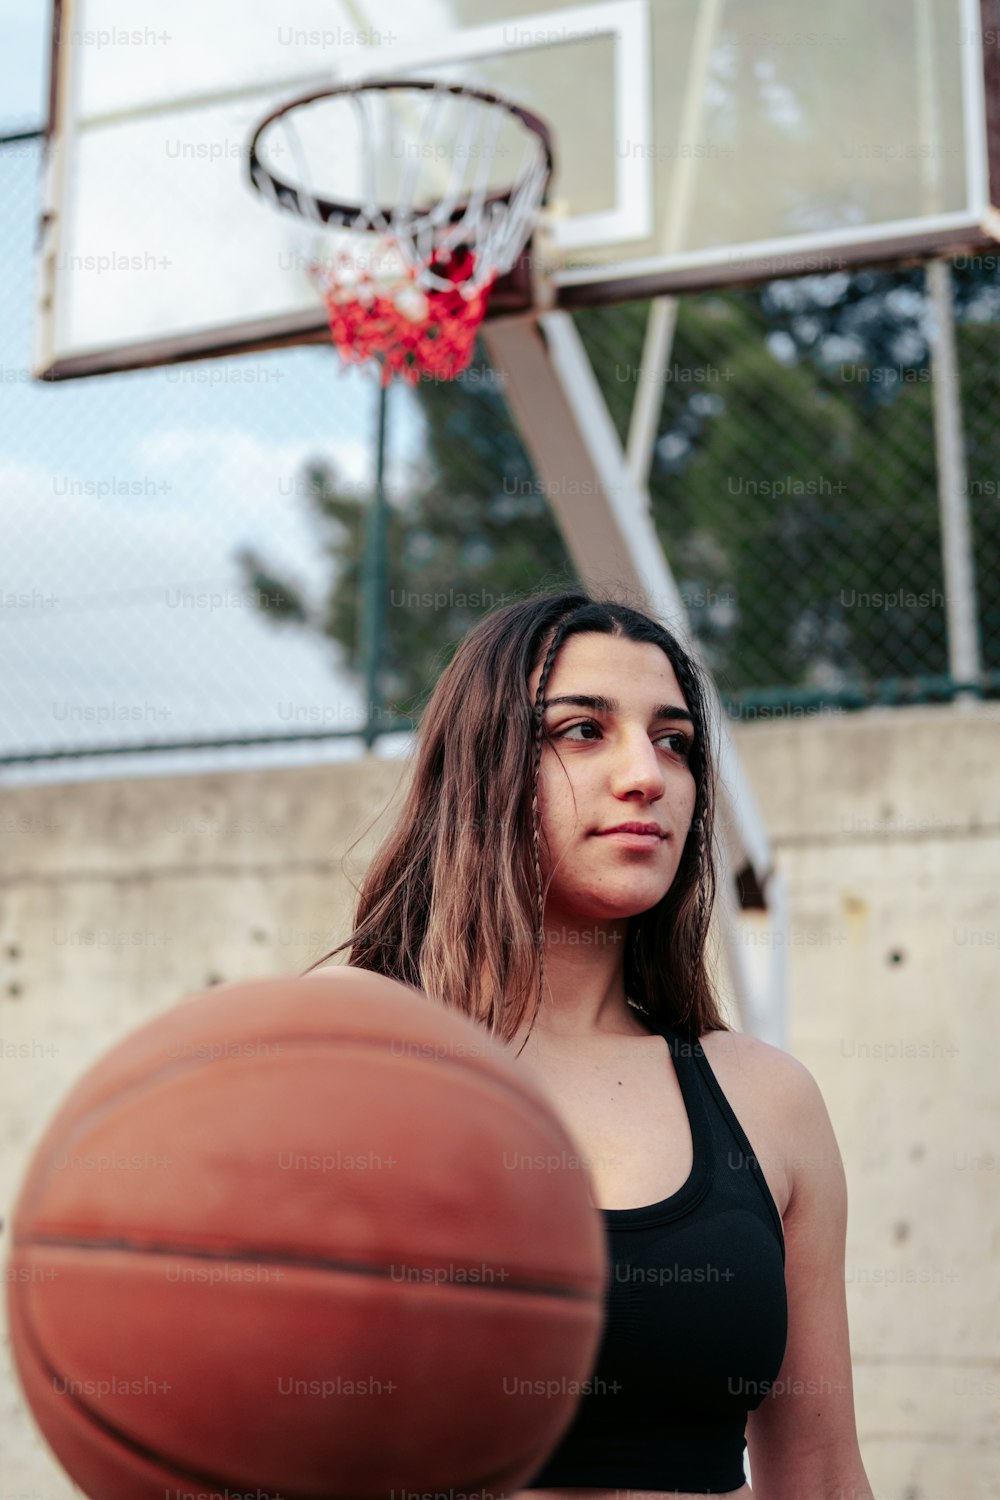 Una mujer parada frente a un aro de baloncesto